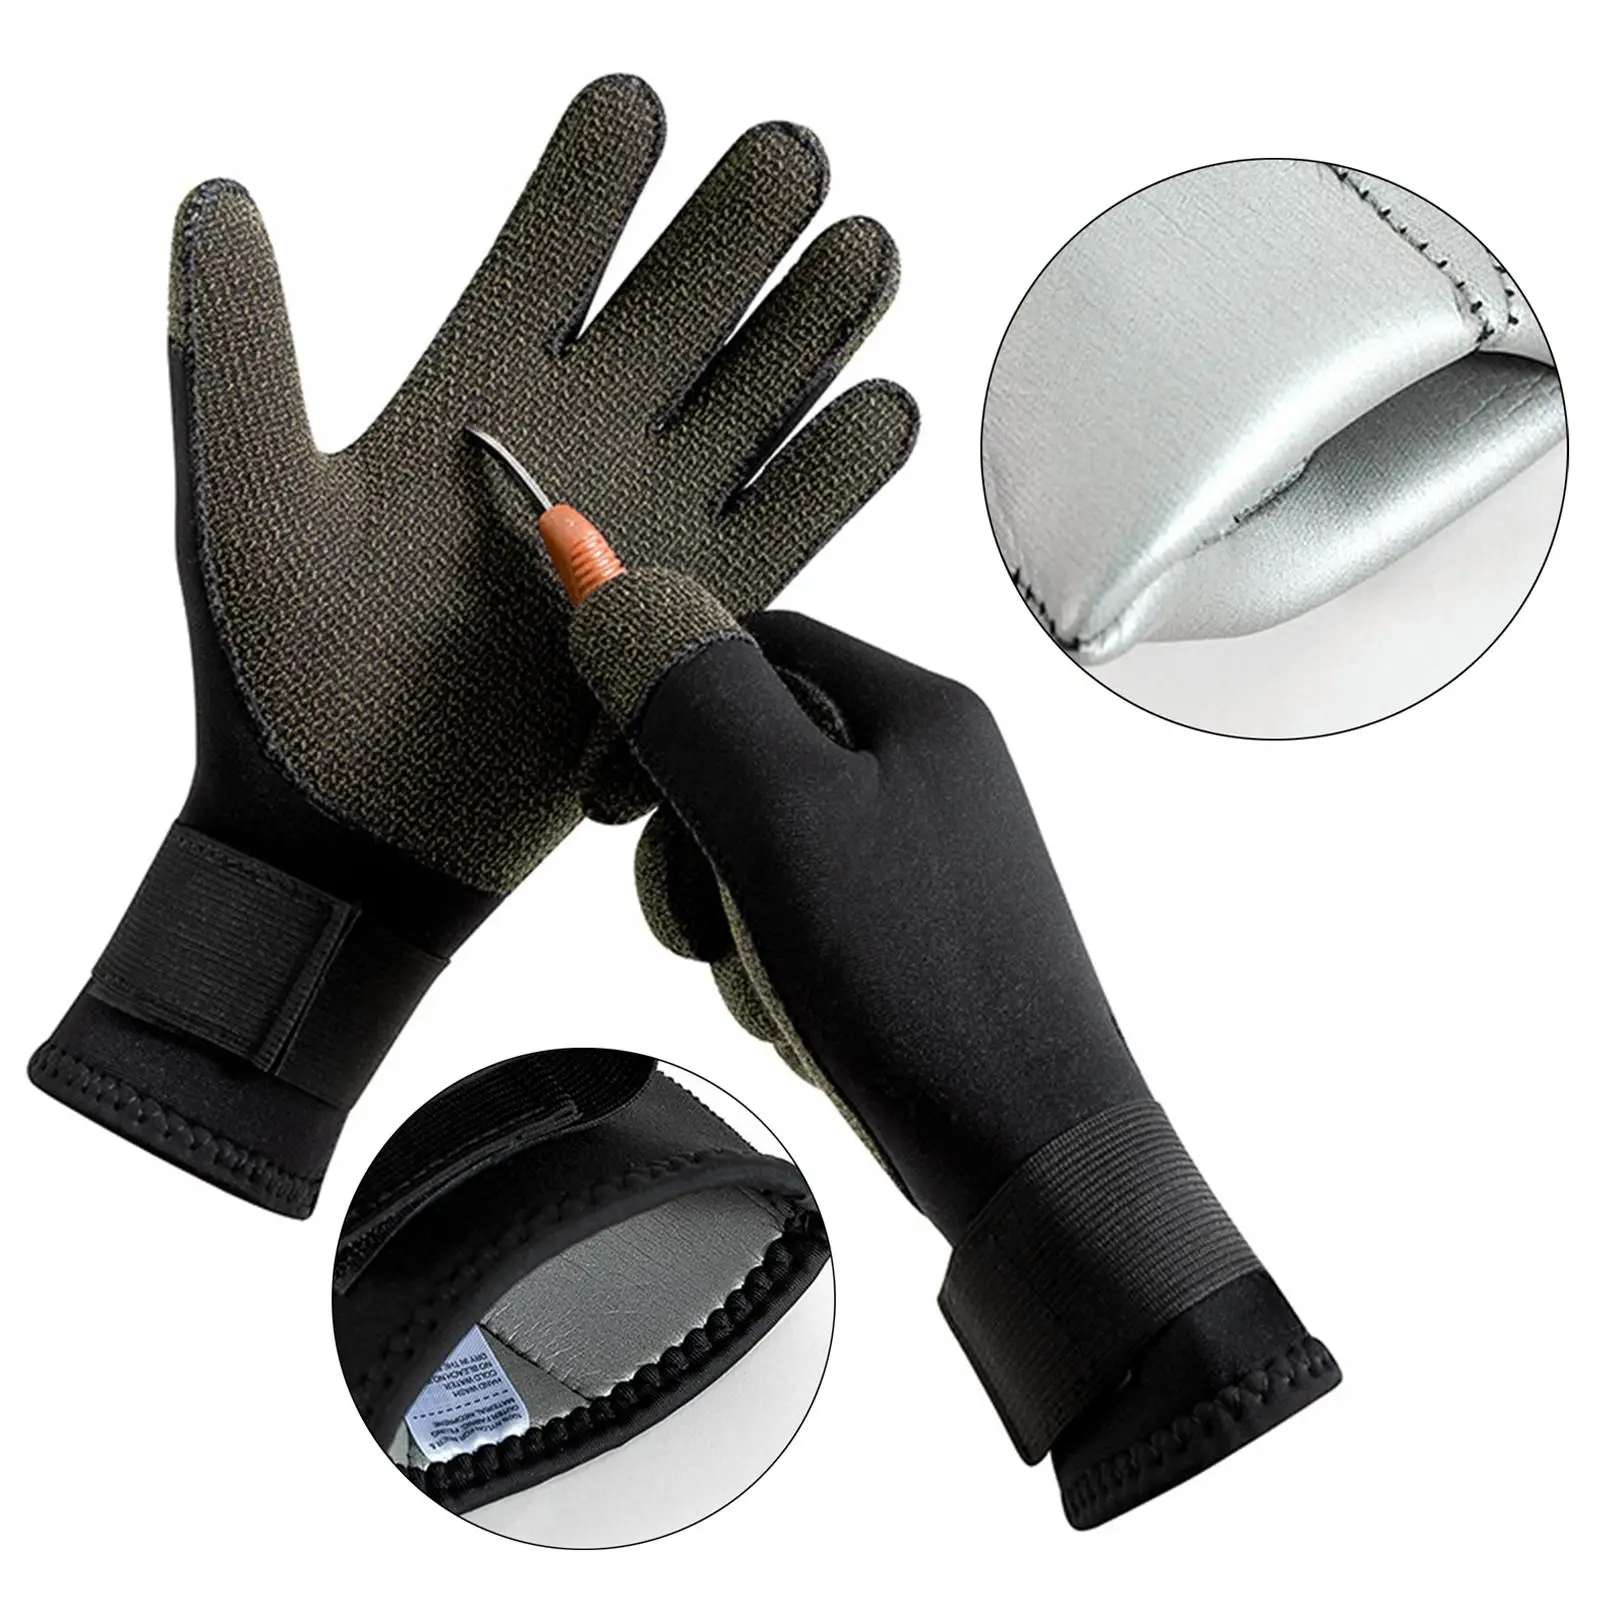 

3mm Neoprene Wetsuit Gloves Wear Resistant Five Finger Gloves Scuba Diving Gloves for Fishing Lap Women Swimming Men Surfing